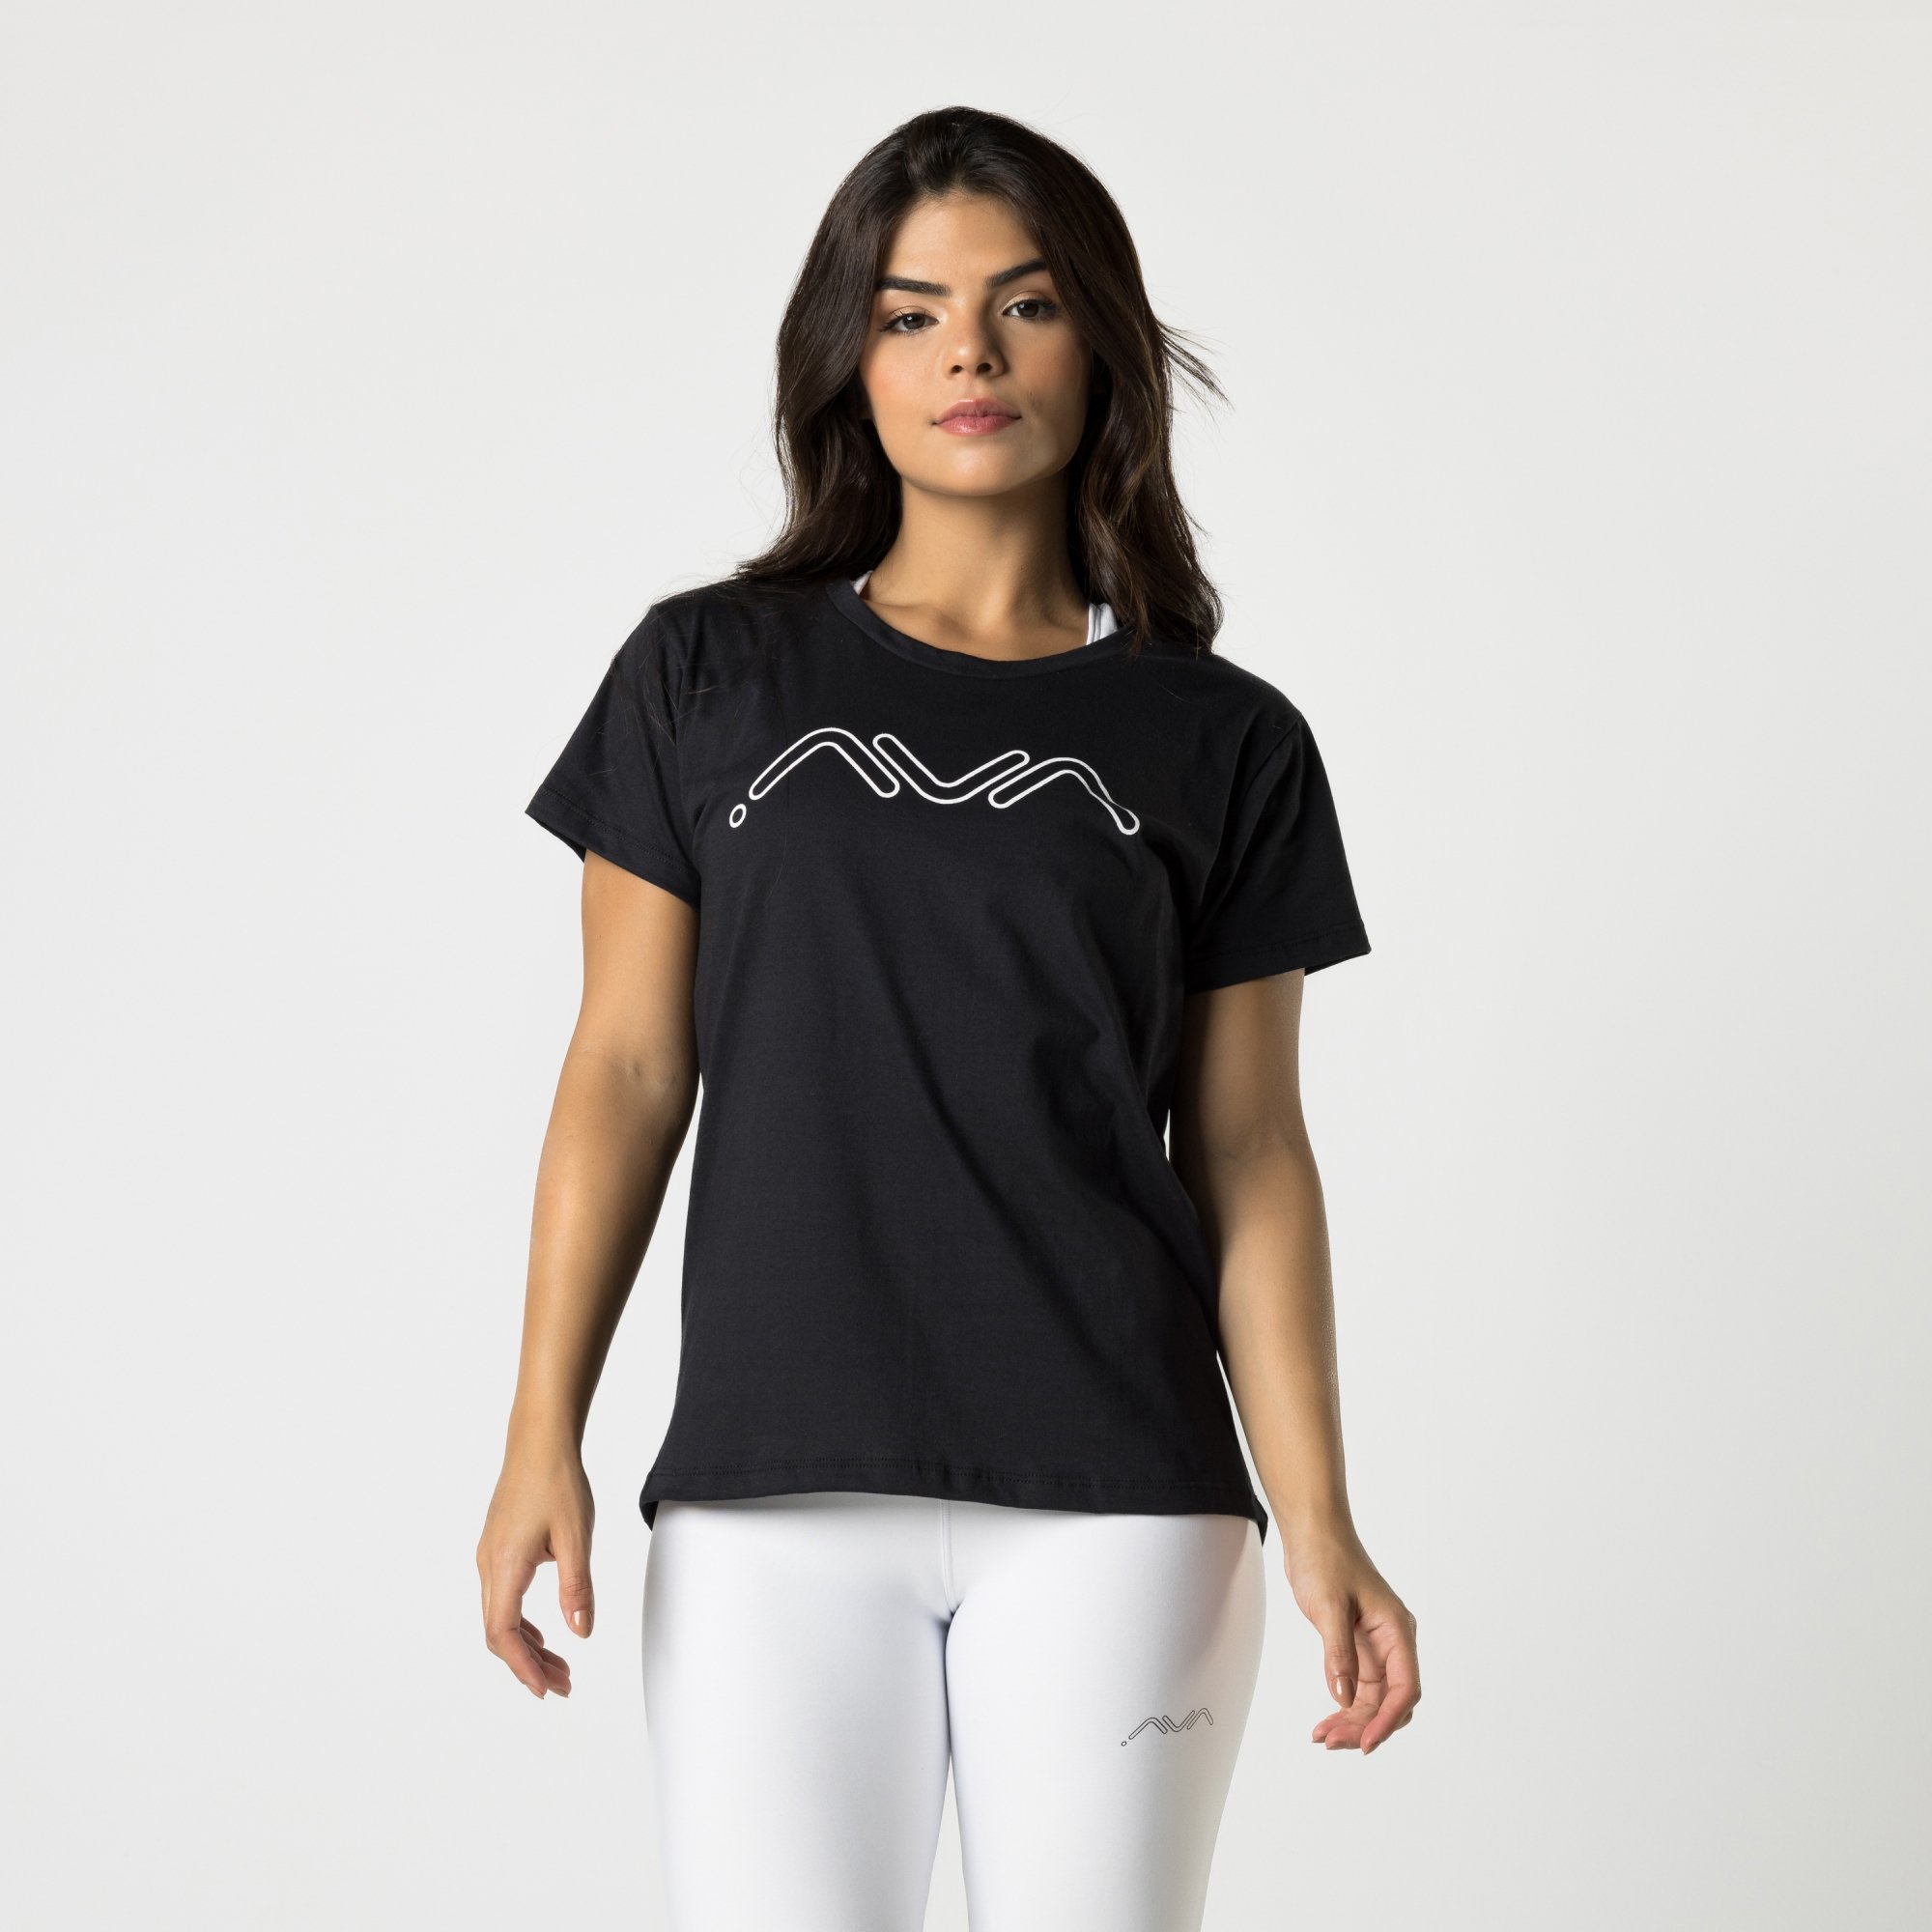 T-shirt Camisa Feminina Preta AVA Fitness - Ava Fitness